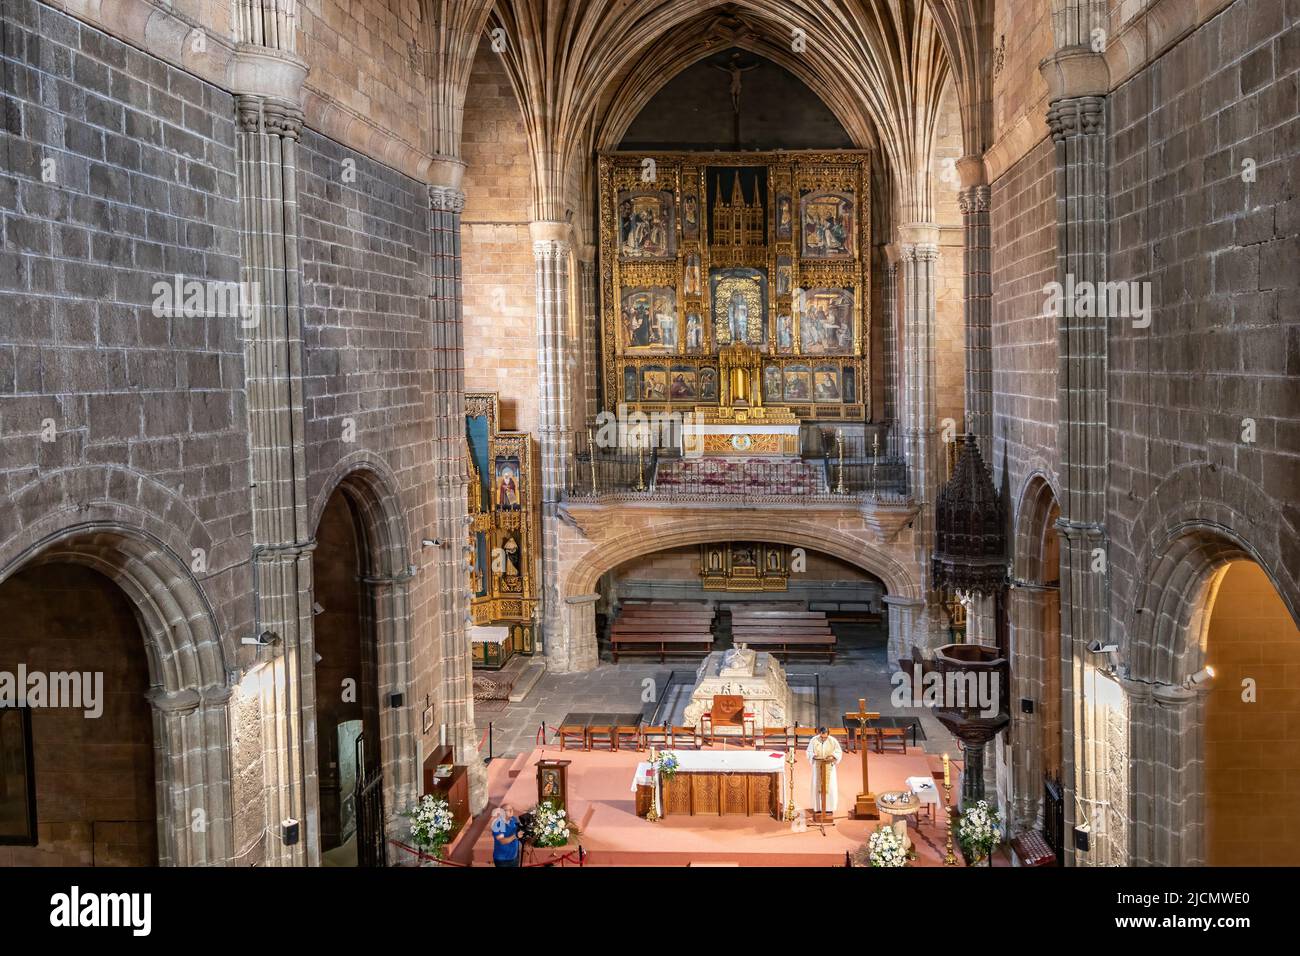 Avila, España - 9 de septiembre de 2017: Interior del Real Monasterio de Santo Tomás, Real Monasterio de Santo Tomás, es un monasterio de los Reyes Católicos Foto de stock